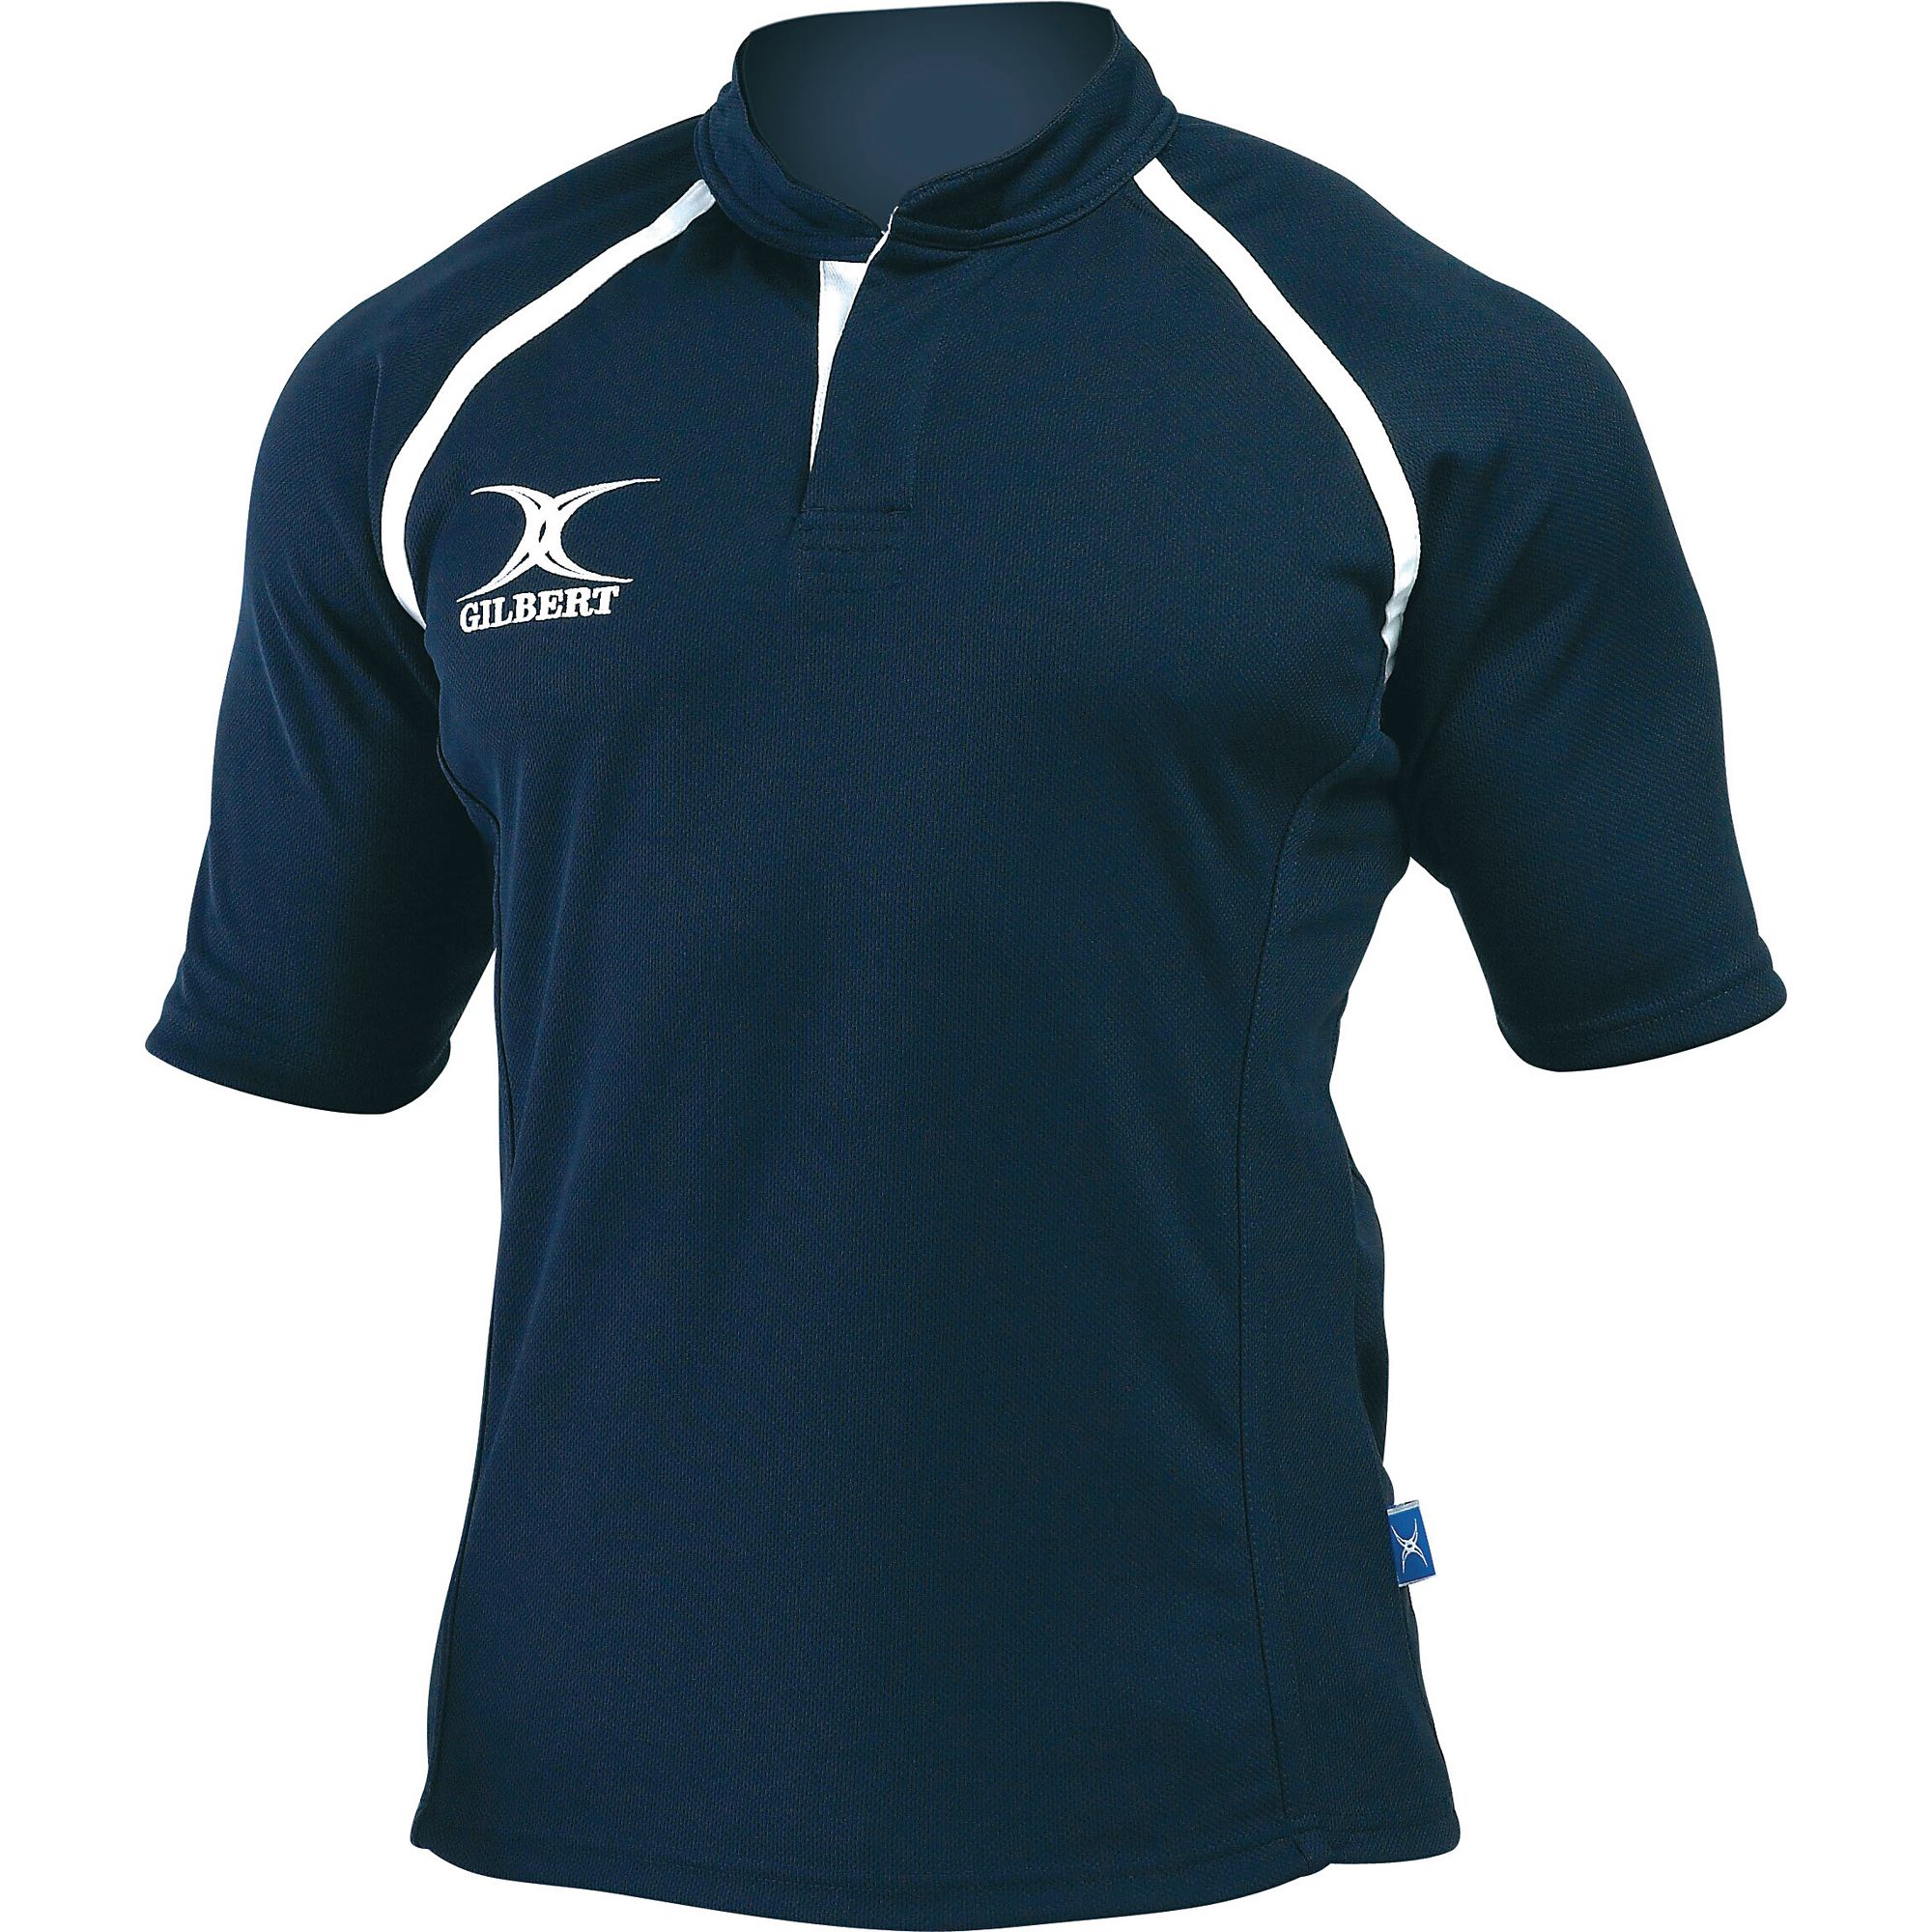 Gilbert Plain Rugby Shirt 26in Navy